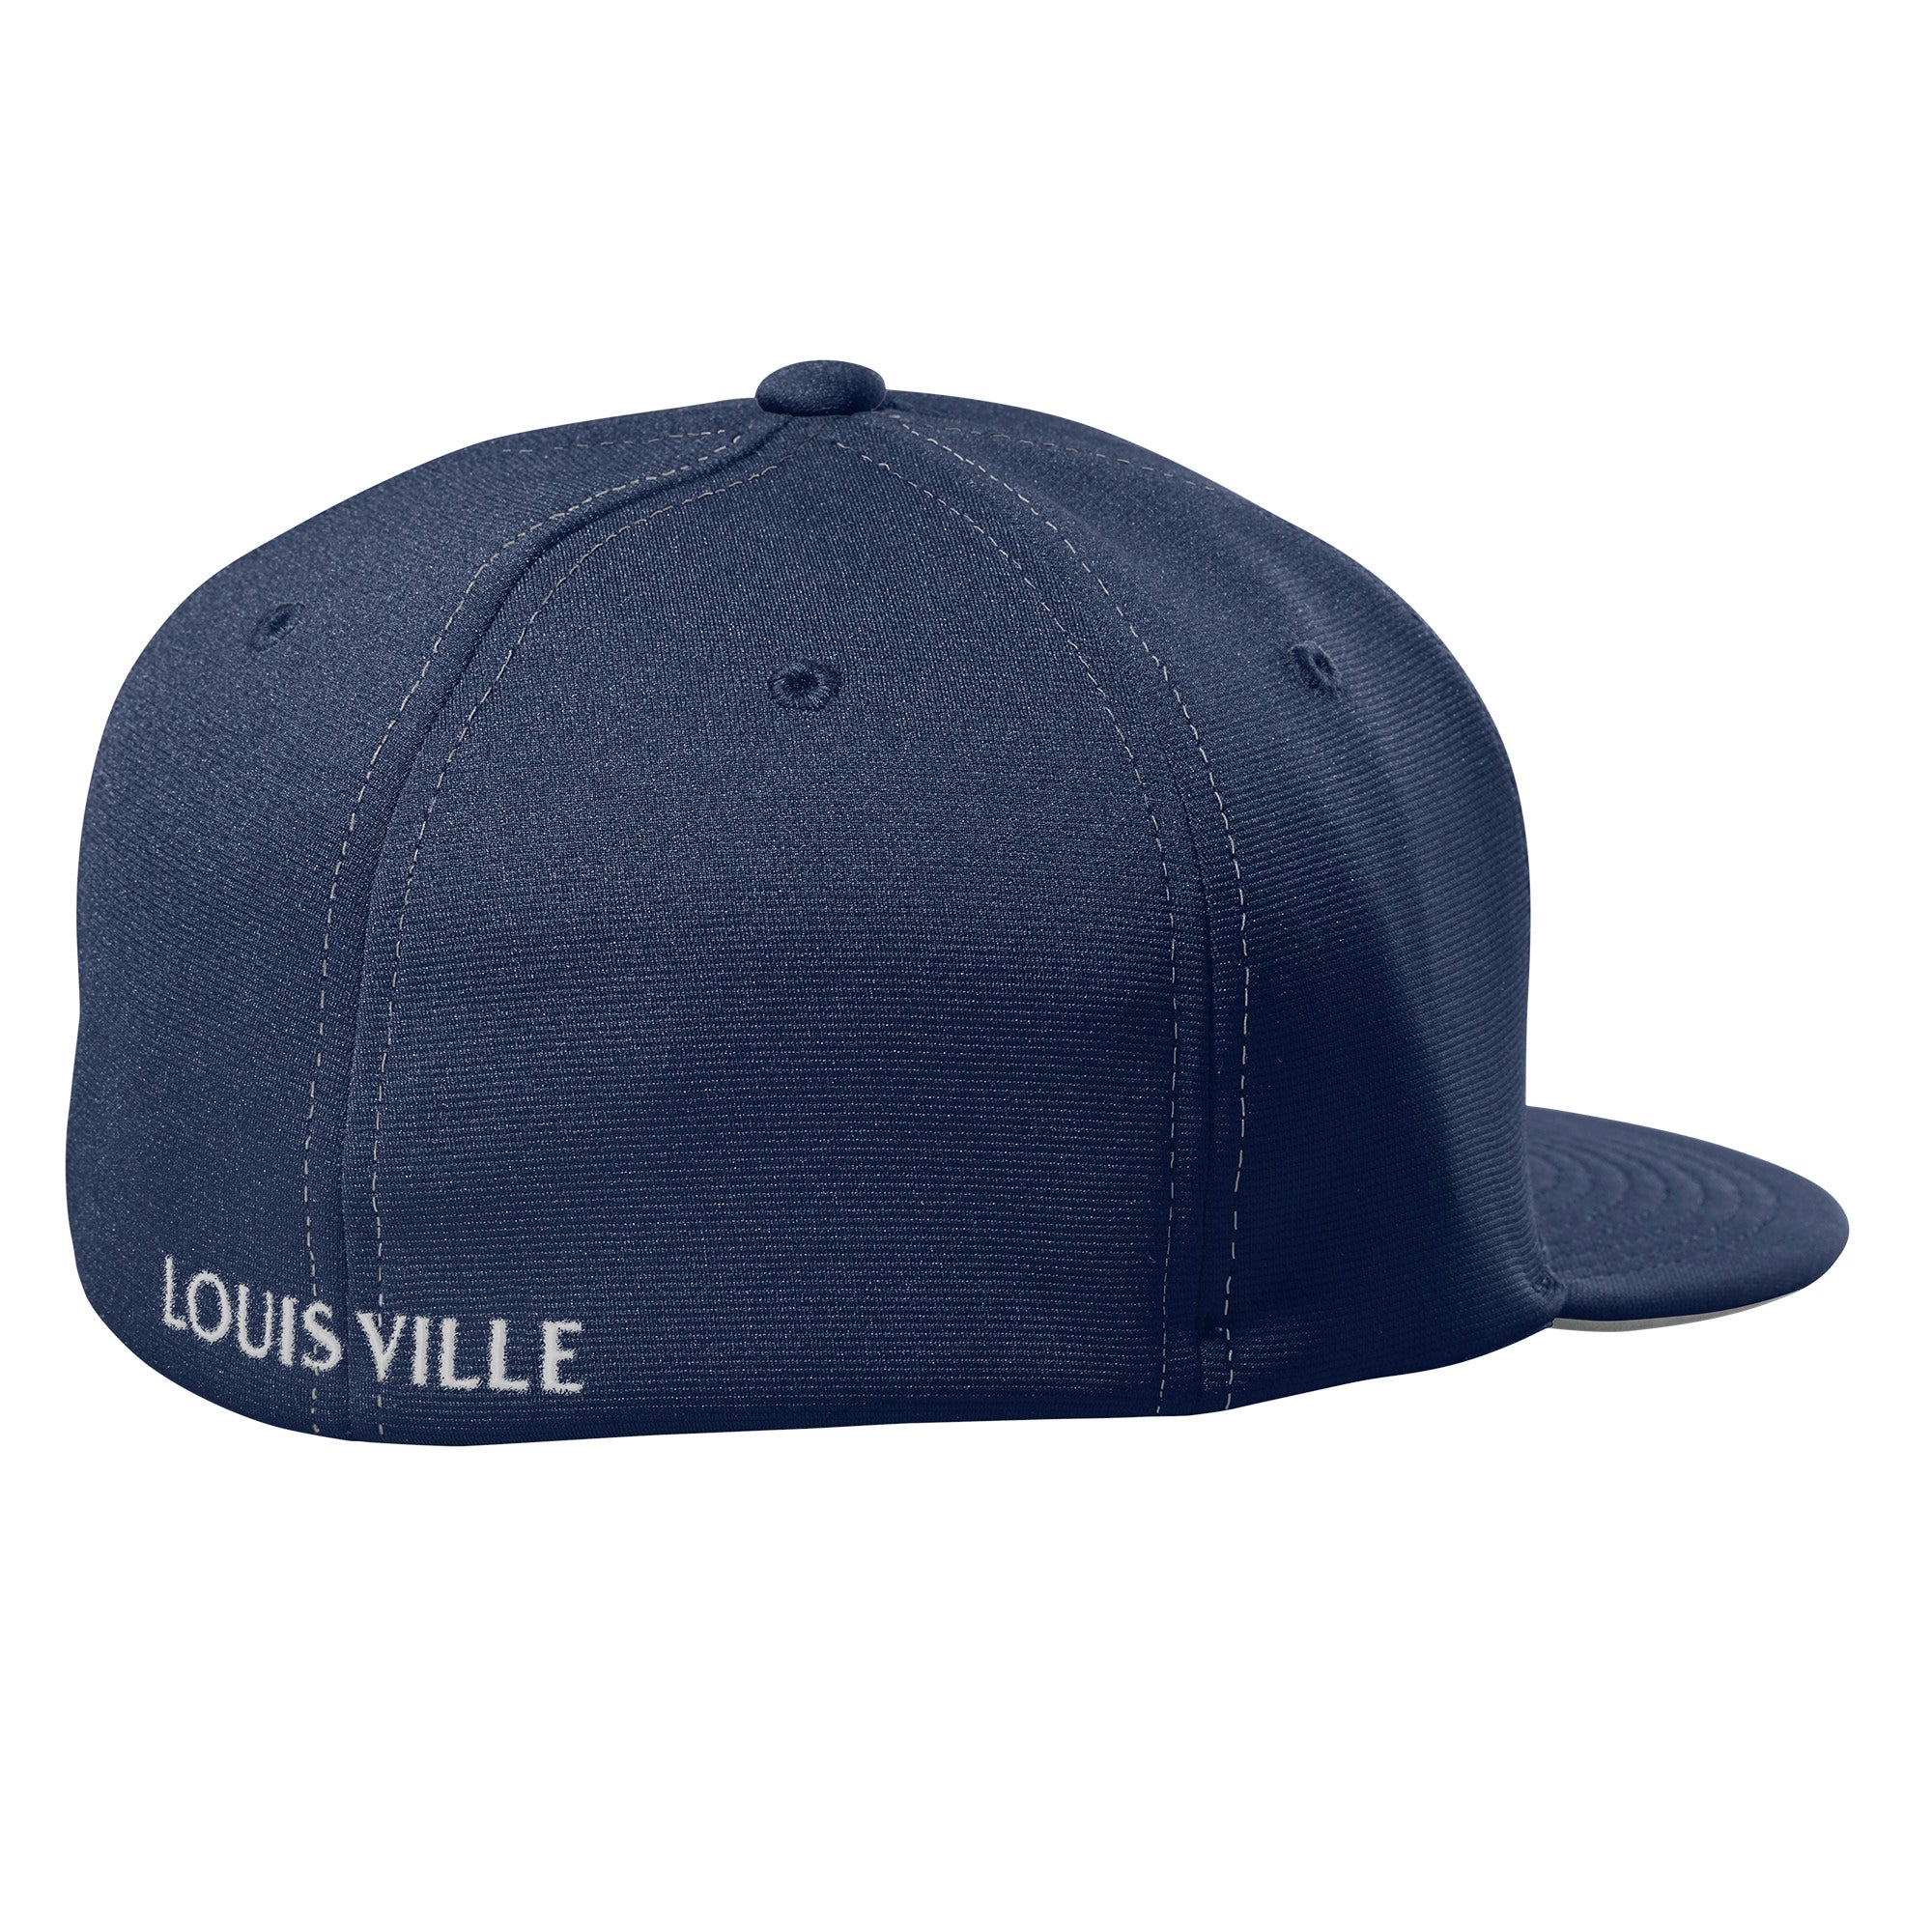 Louisville Slugger White Hats for Men